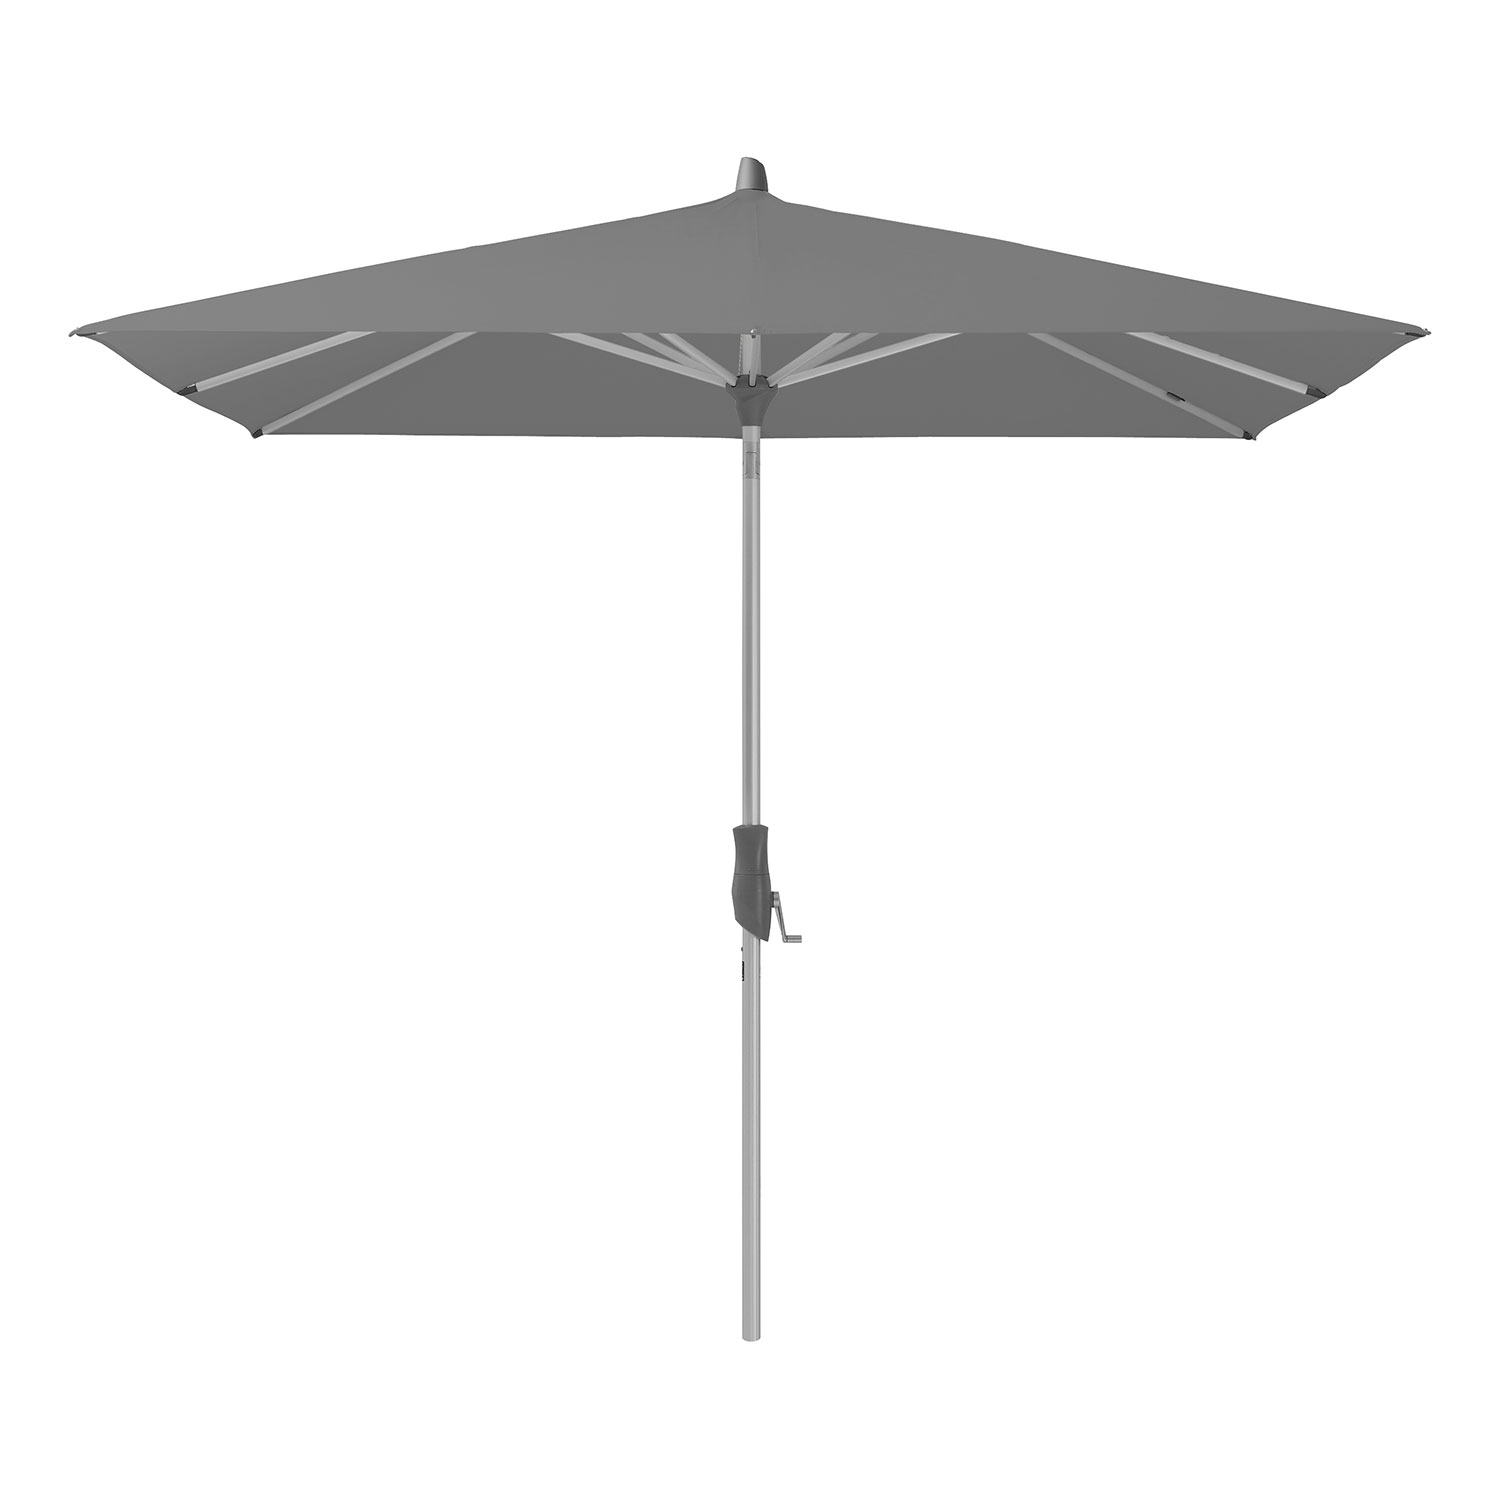 Glatz Alu-twist parasoll 240×240 cm cm kat.5 684 urban shadow